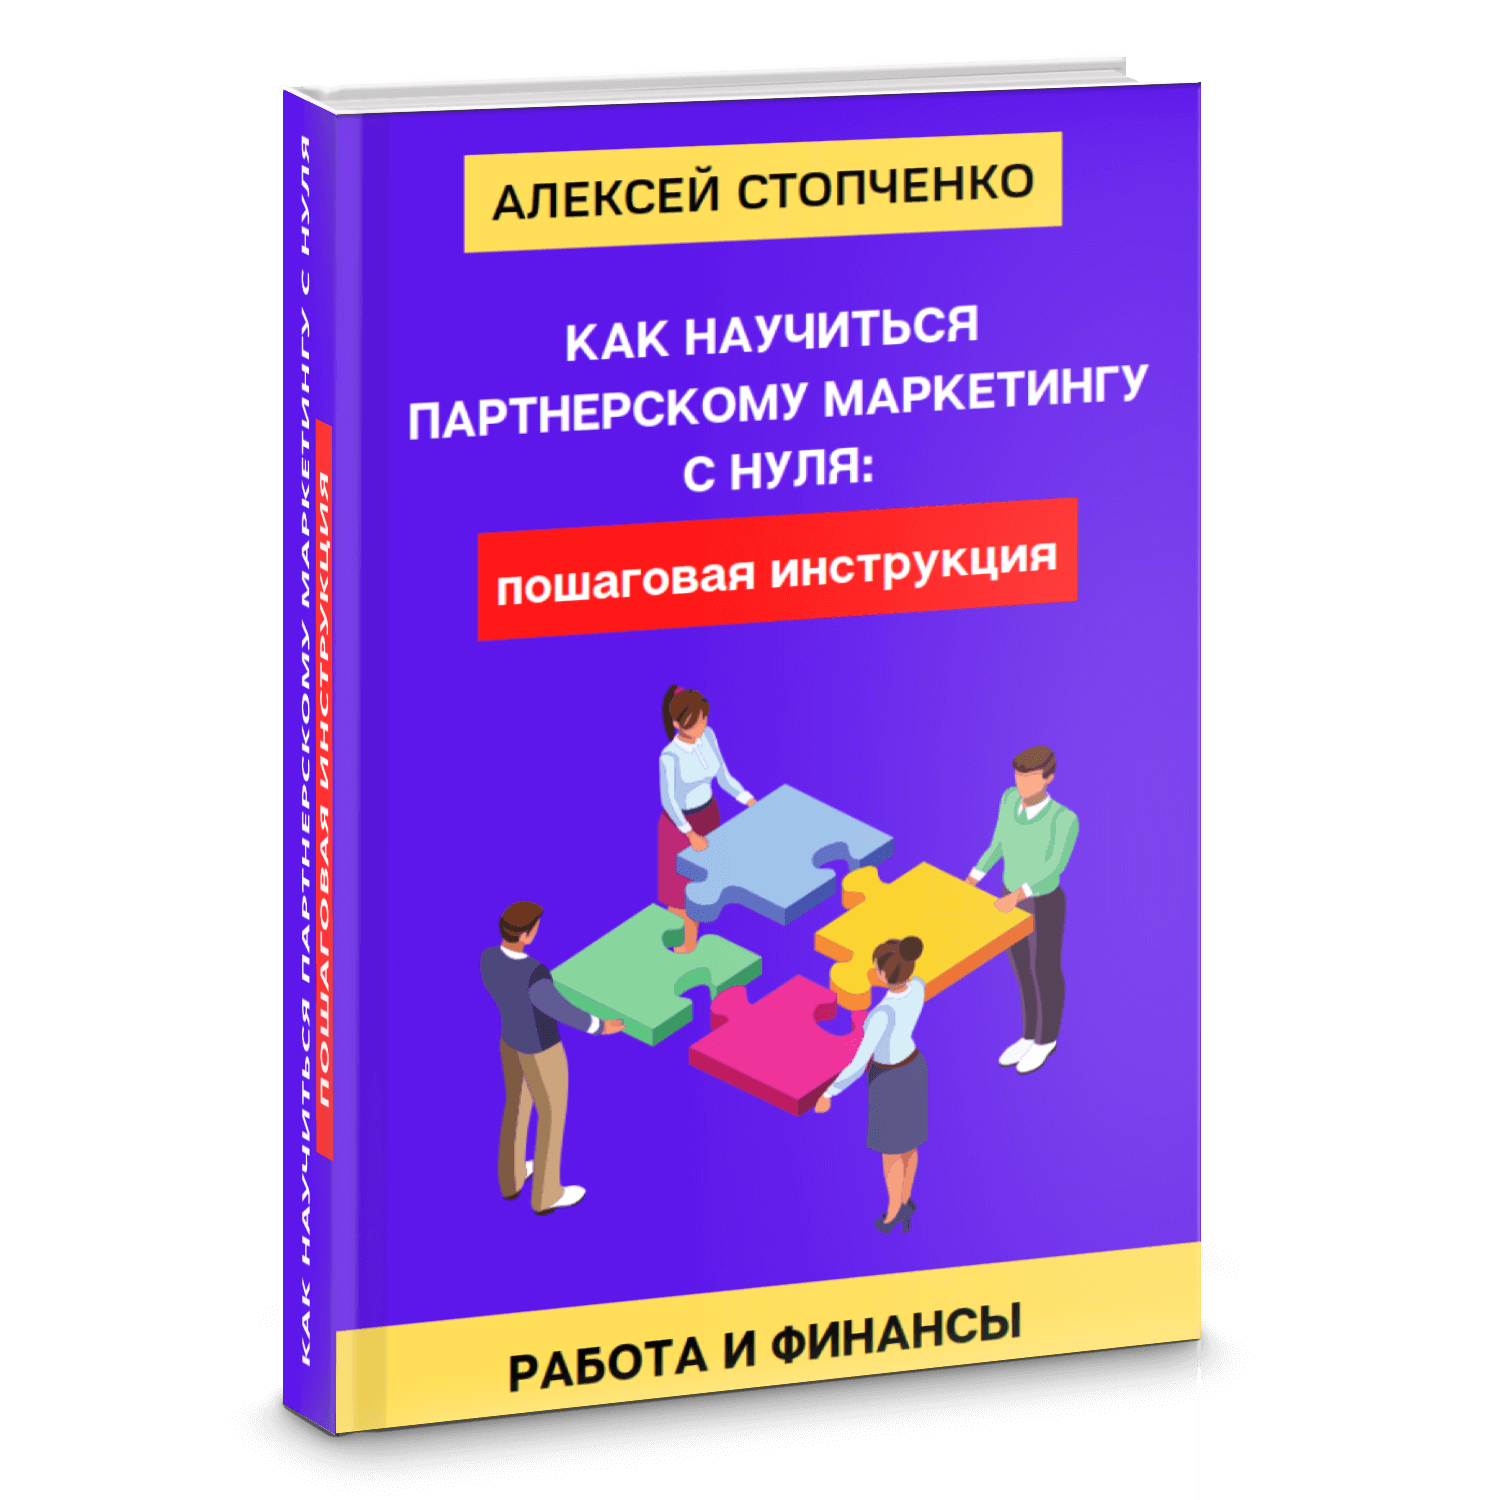 Каталог - обучение Алексея Стопченко